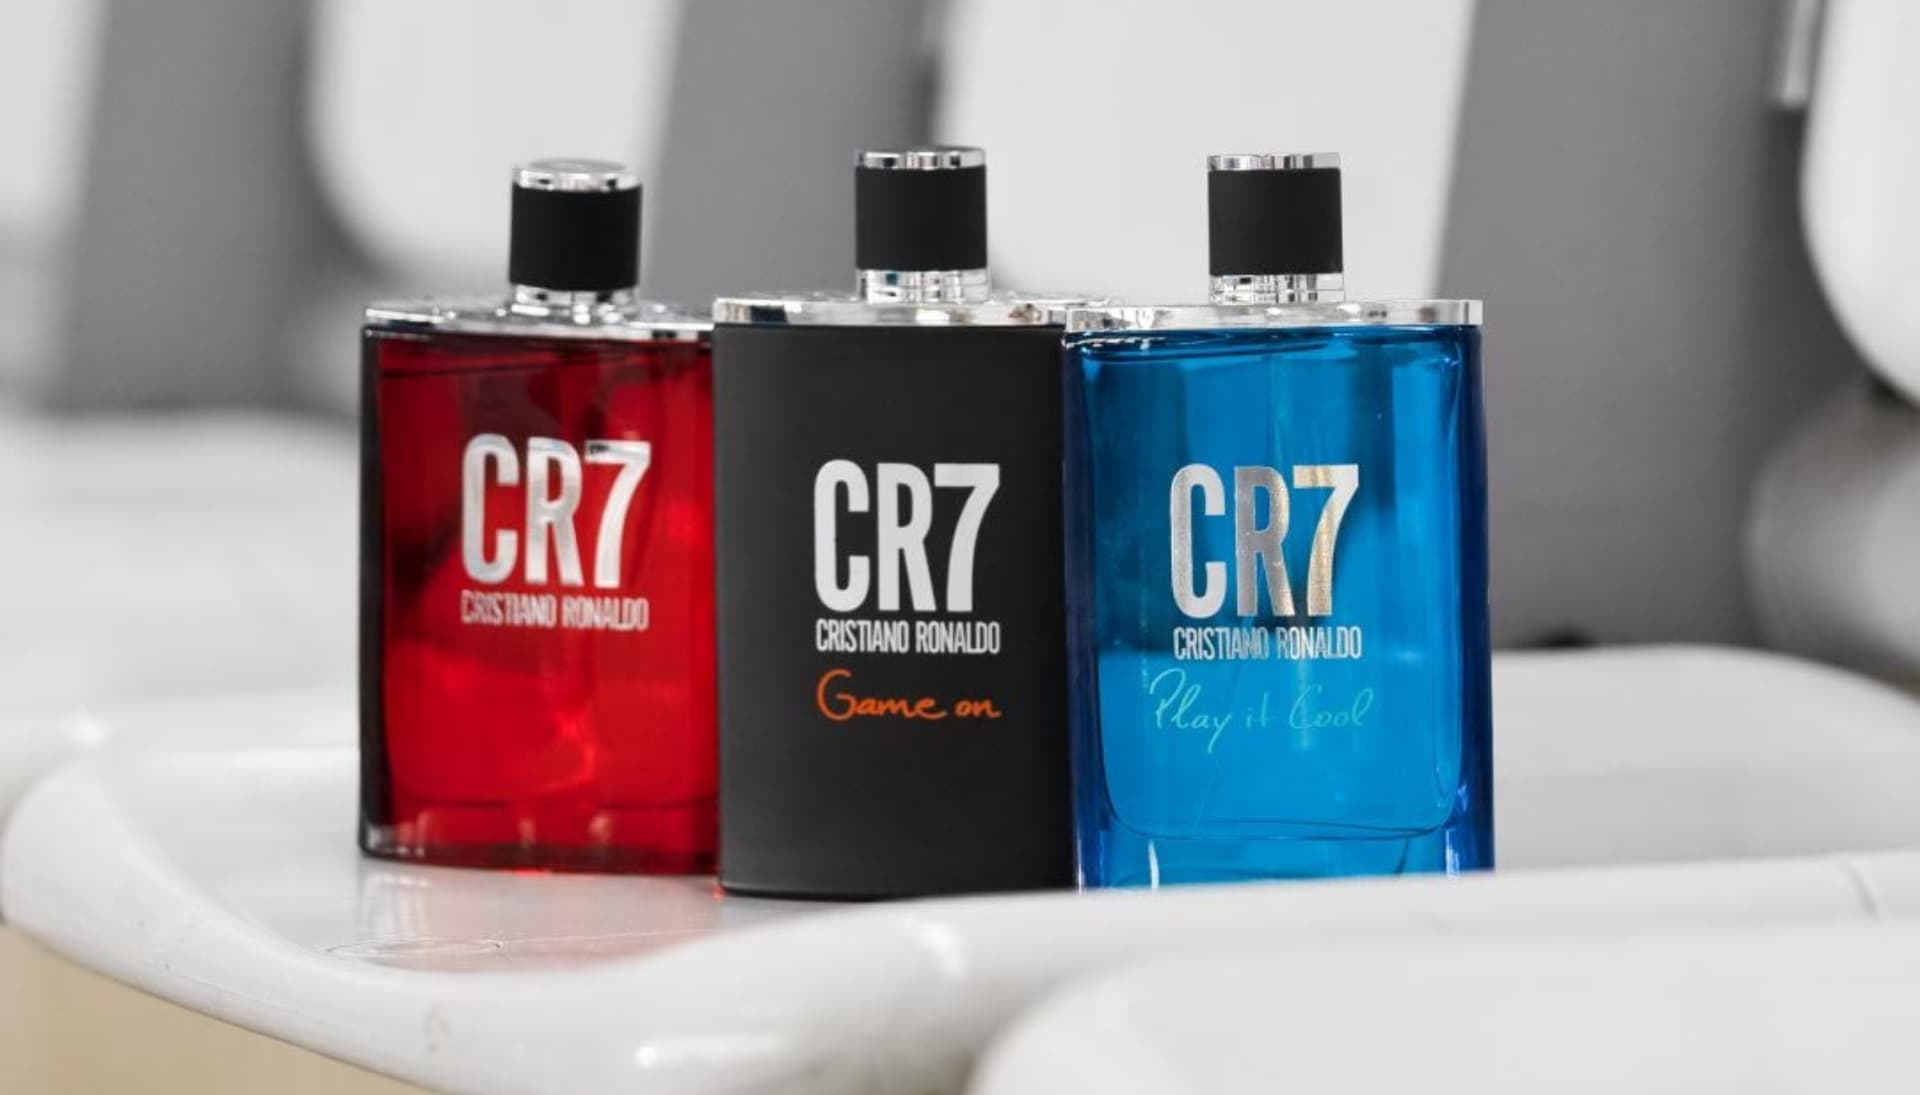 Así es CR7 la línea de productos de moda de Cristiano Ronaldo